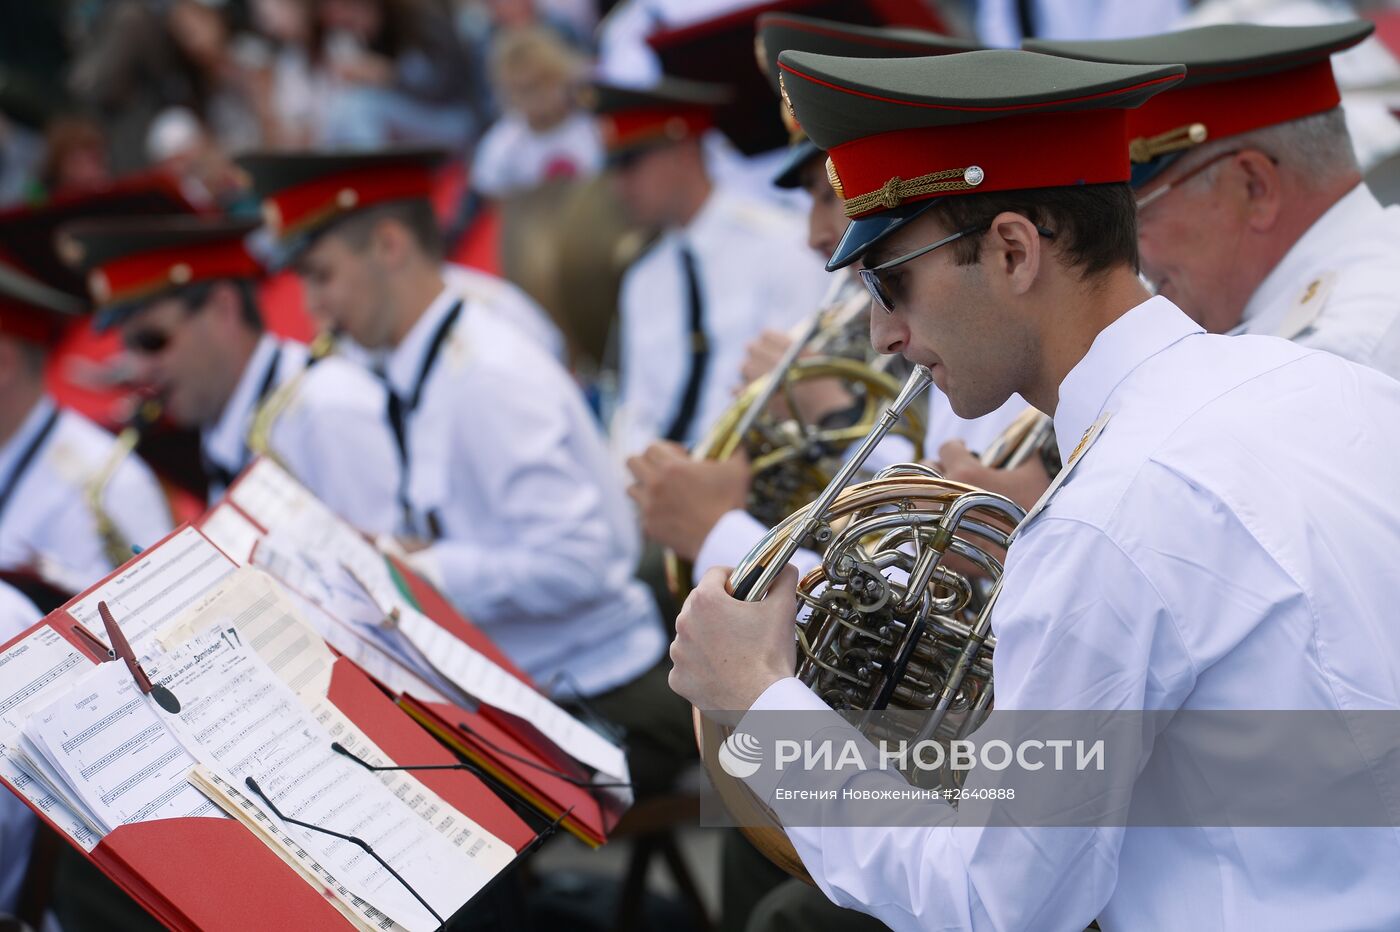 Празднование Дня России в Москве